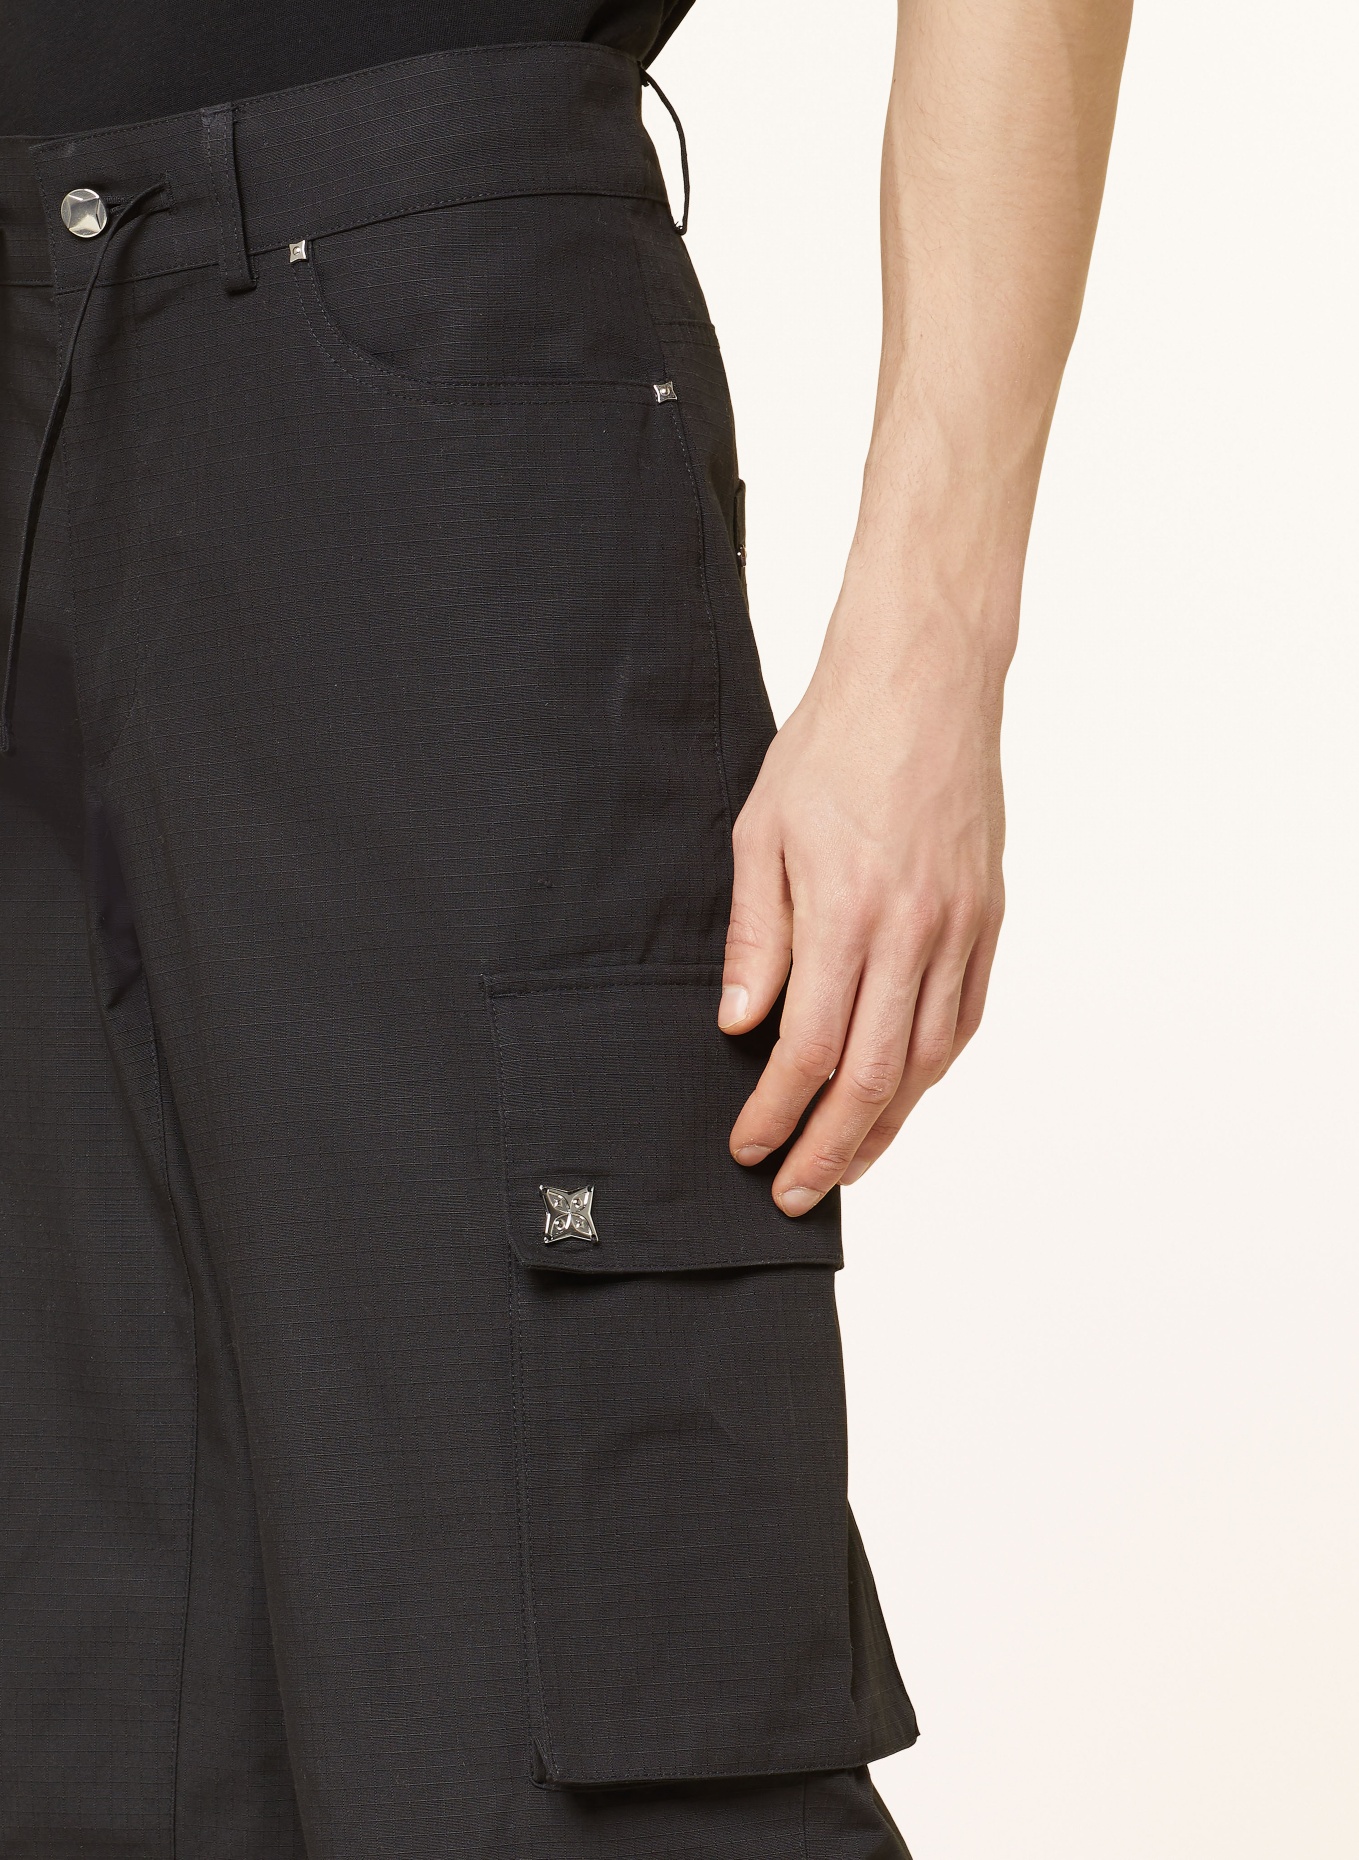 PEQUS Cargo pants regular fit, Color: BLACK (Image 5)